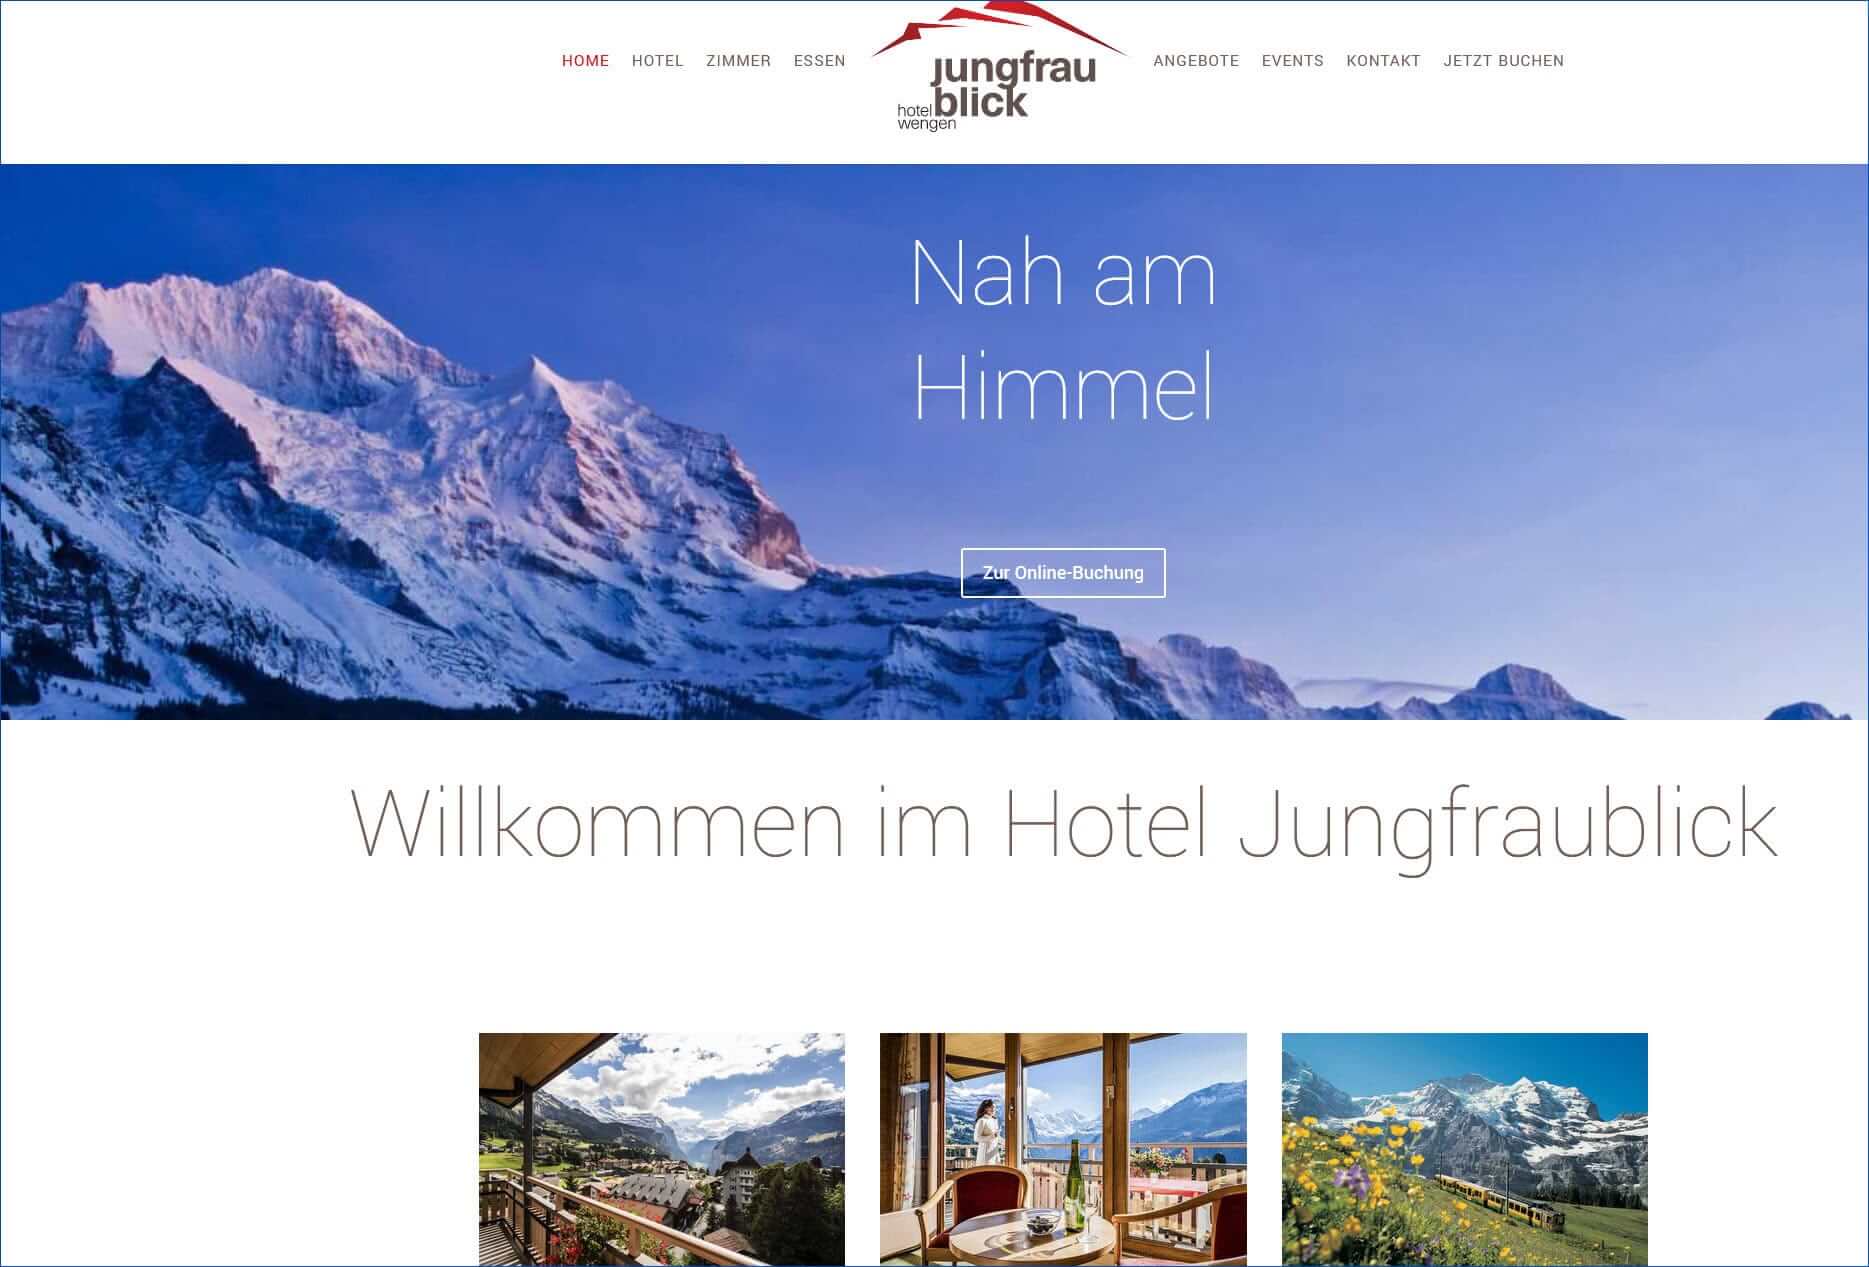 Hotel Jungfraublick, Wengen, Berner Oberland